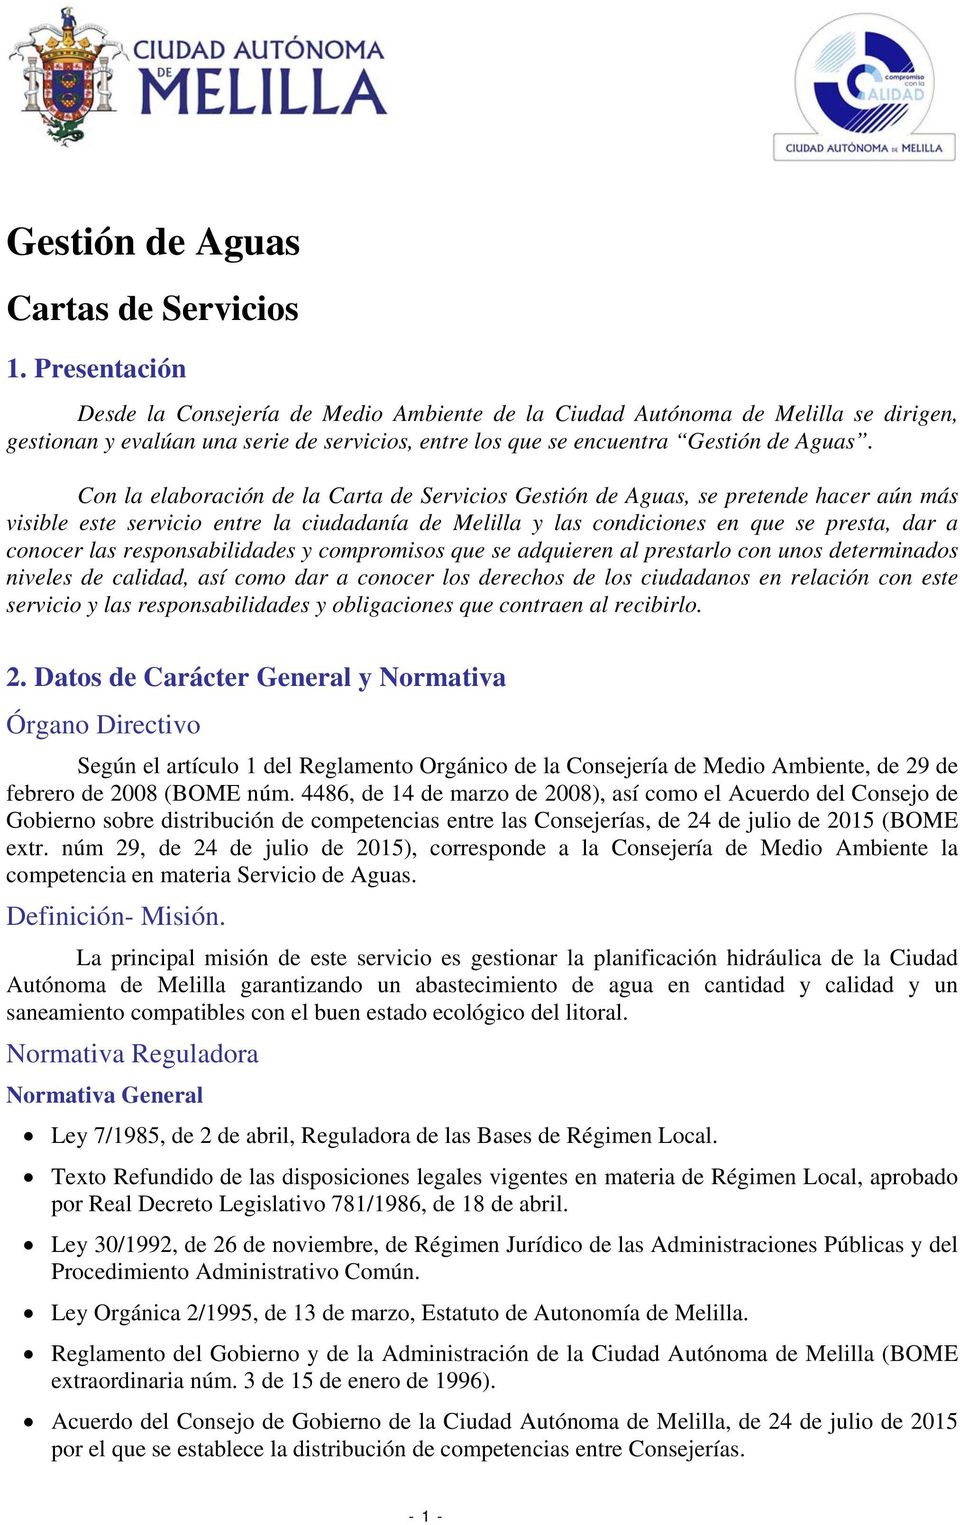 Con la elaboración de la Carta de Servicios Gestión de Aguas, se pretende hacer aún más visible este servicio entre la ciudadanía de Melilla y las condiciones en que se presta, dar a conocer las